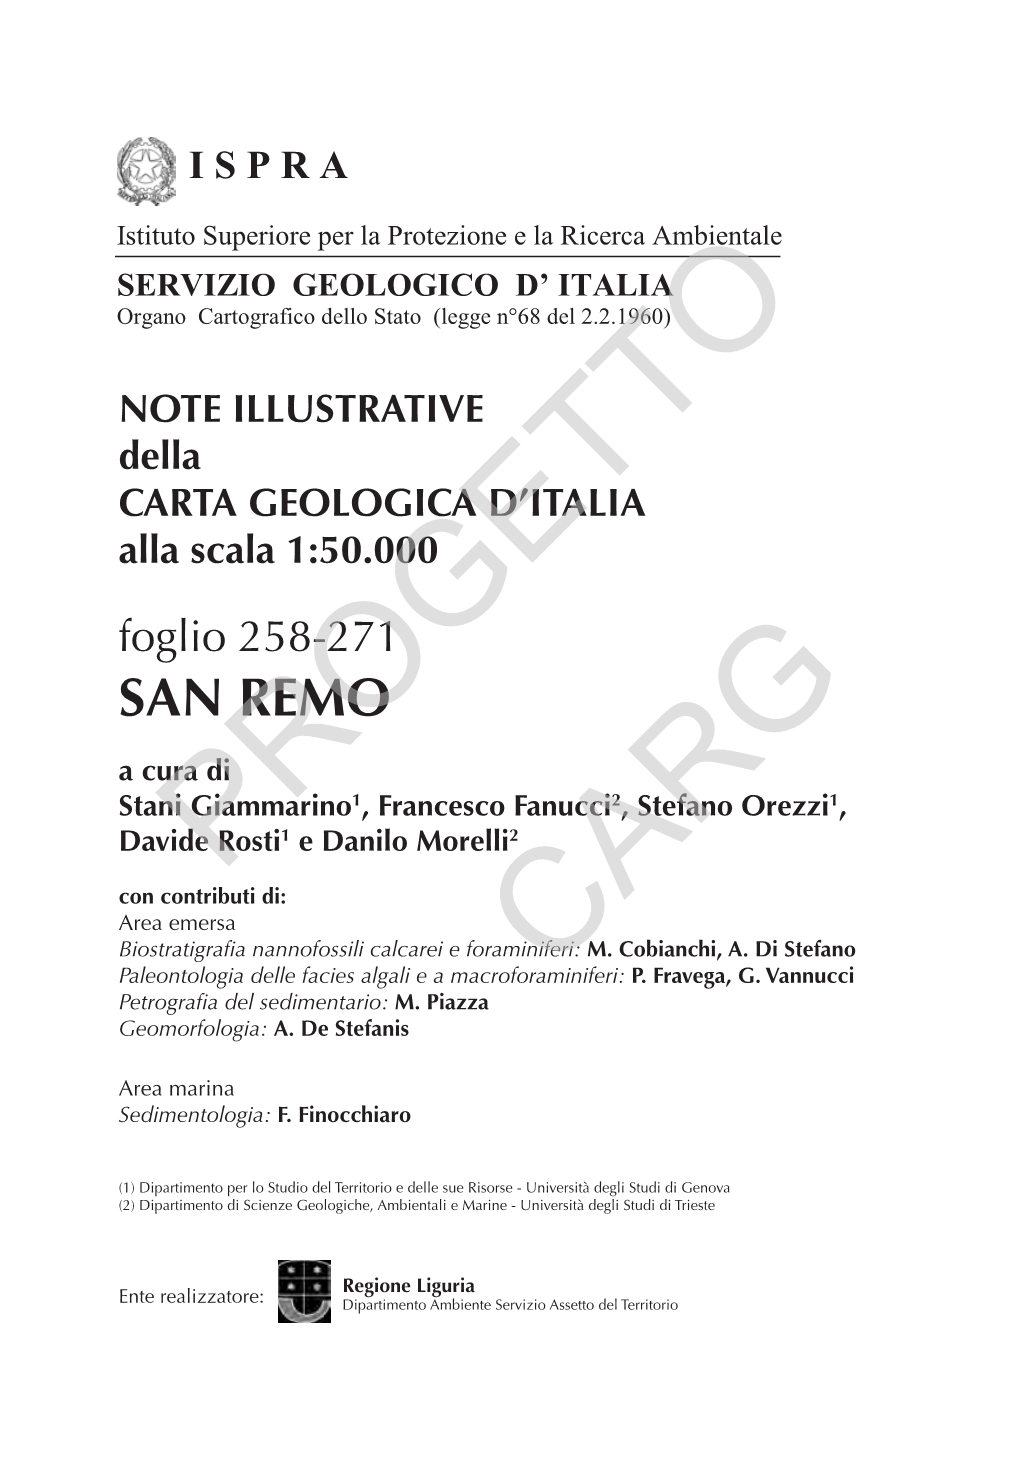 Progetto CARG Per ISPRA - Servizio Geologico D’Italia: F